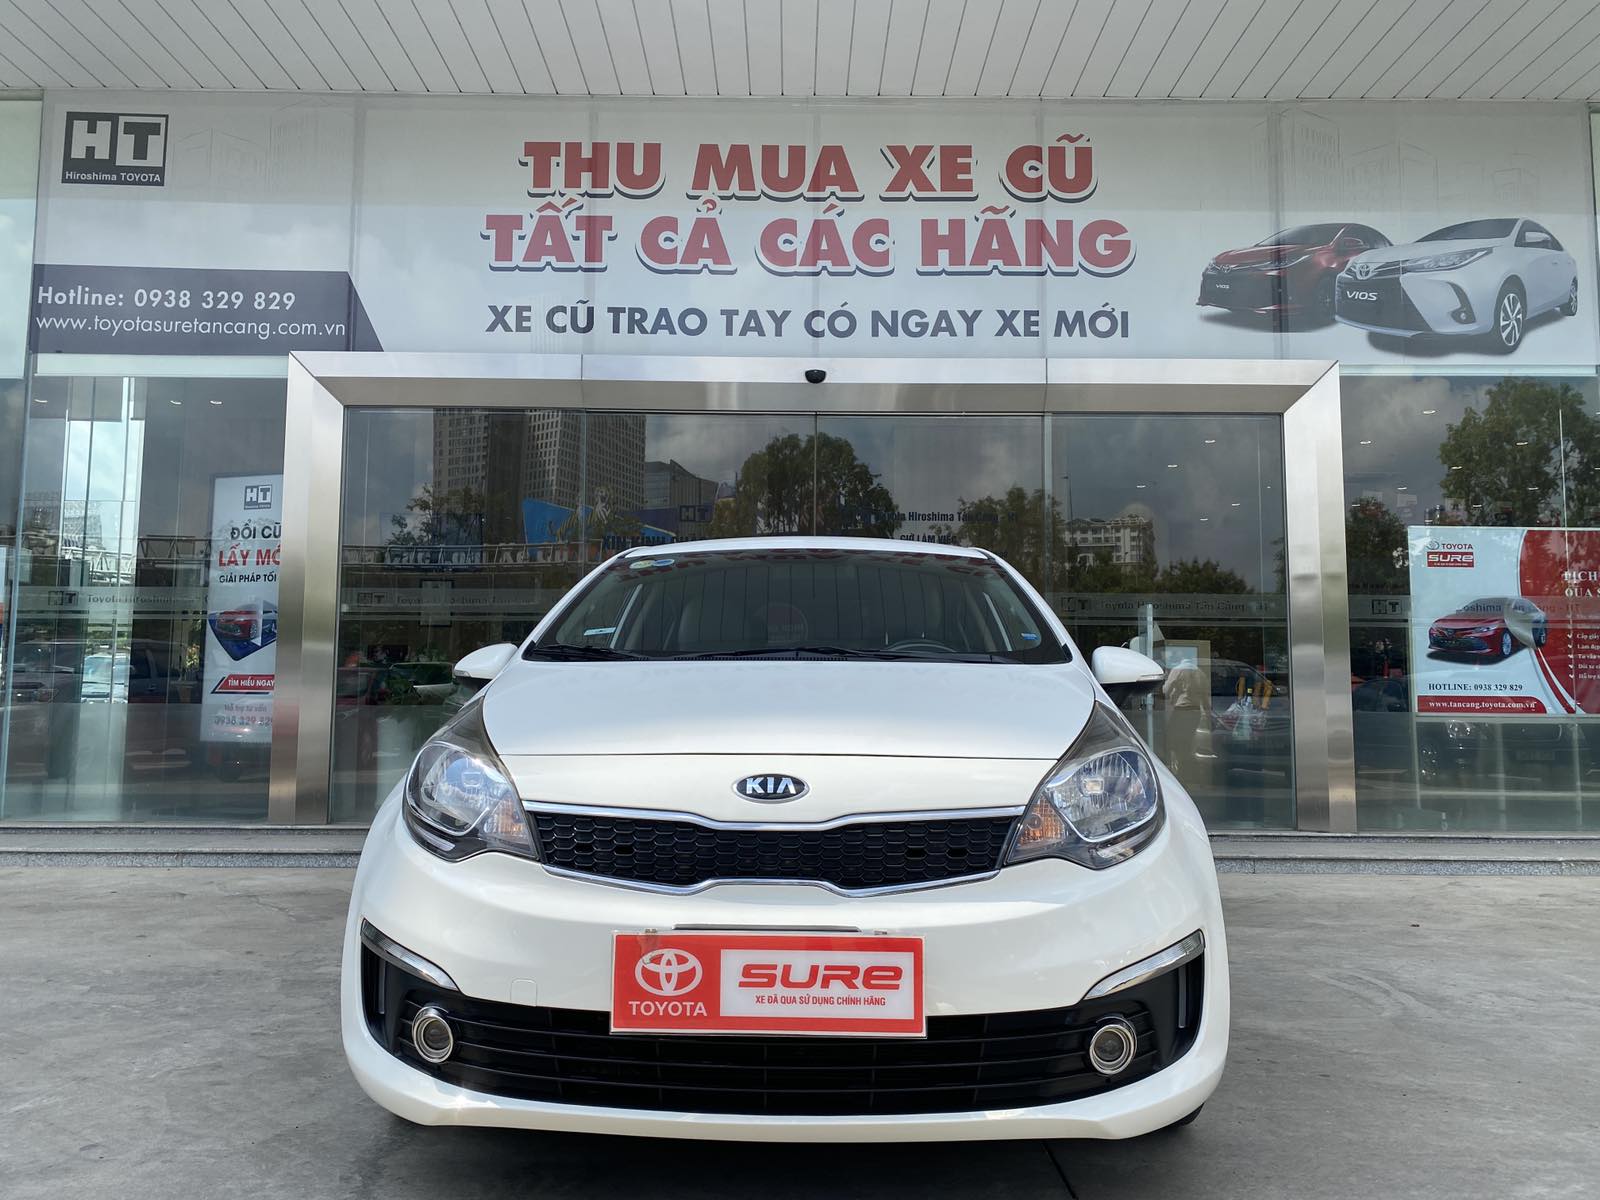 Kia Rio Sedan có giá bán công bố từ 490 triệu đồng tại Việt Nam